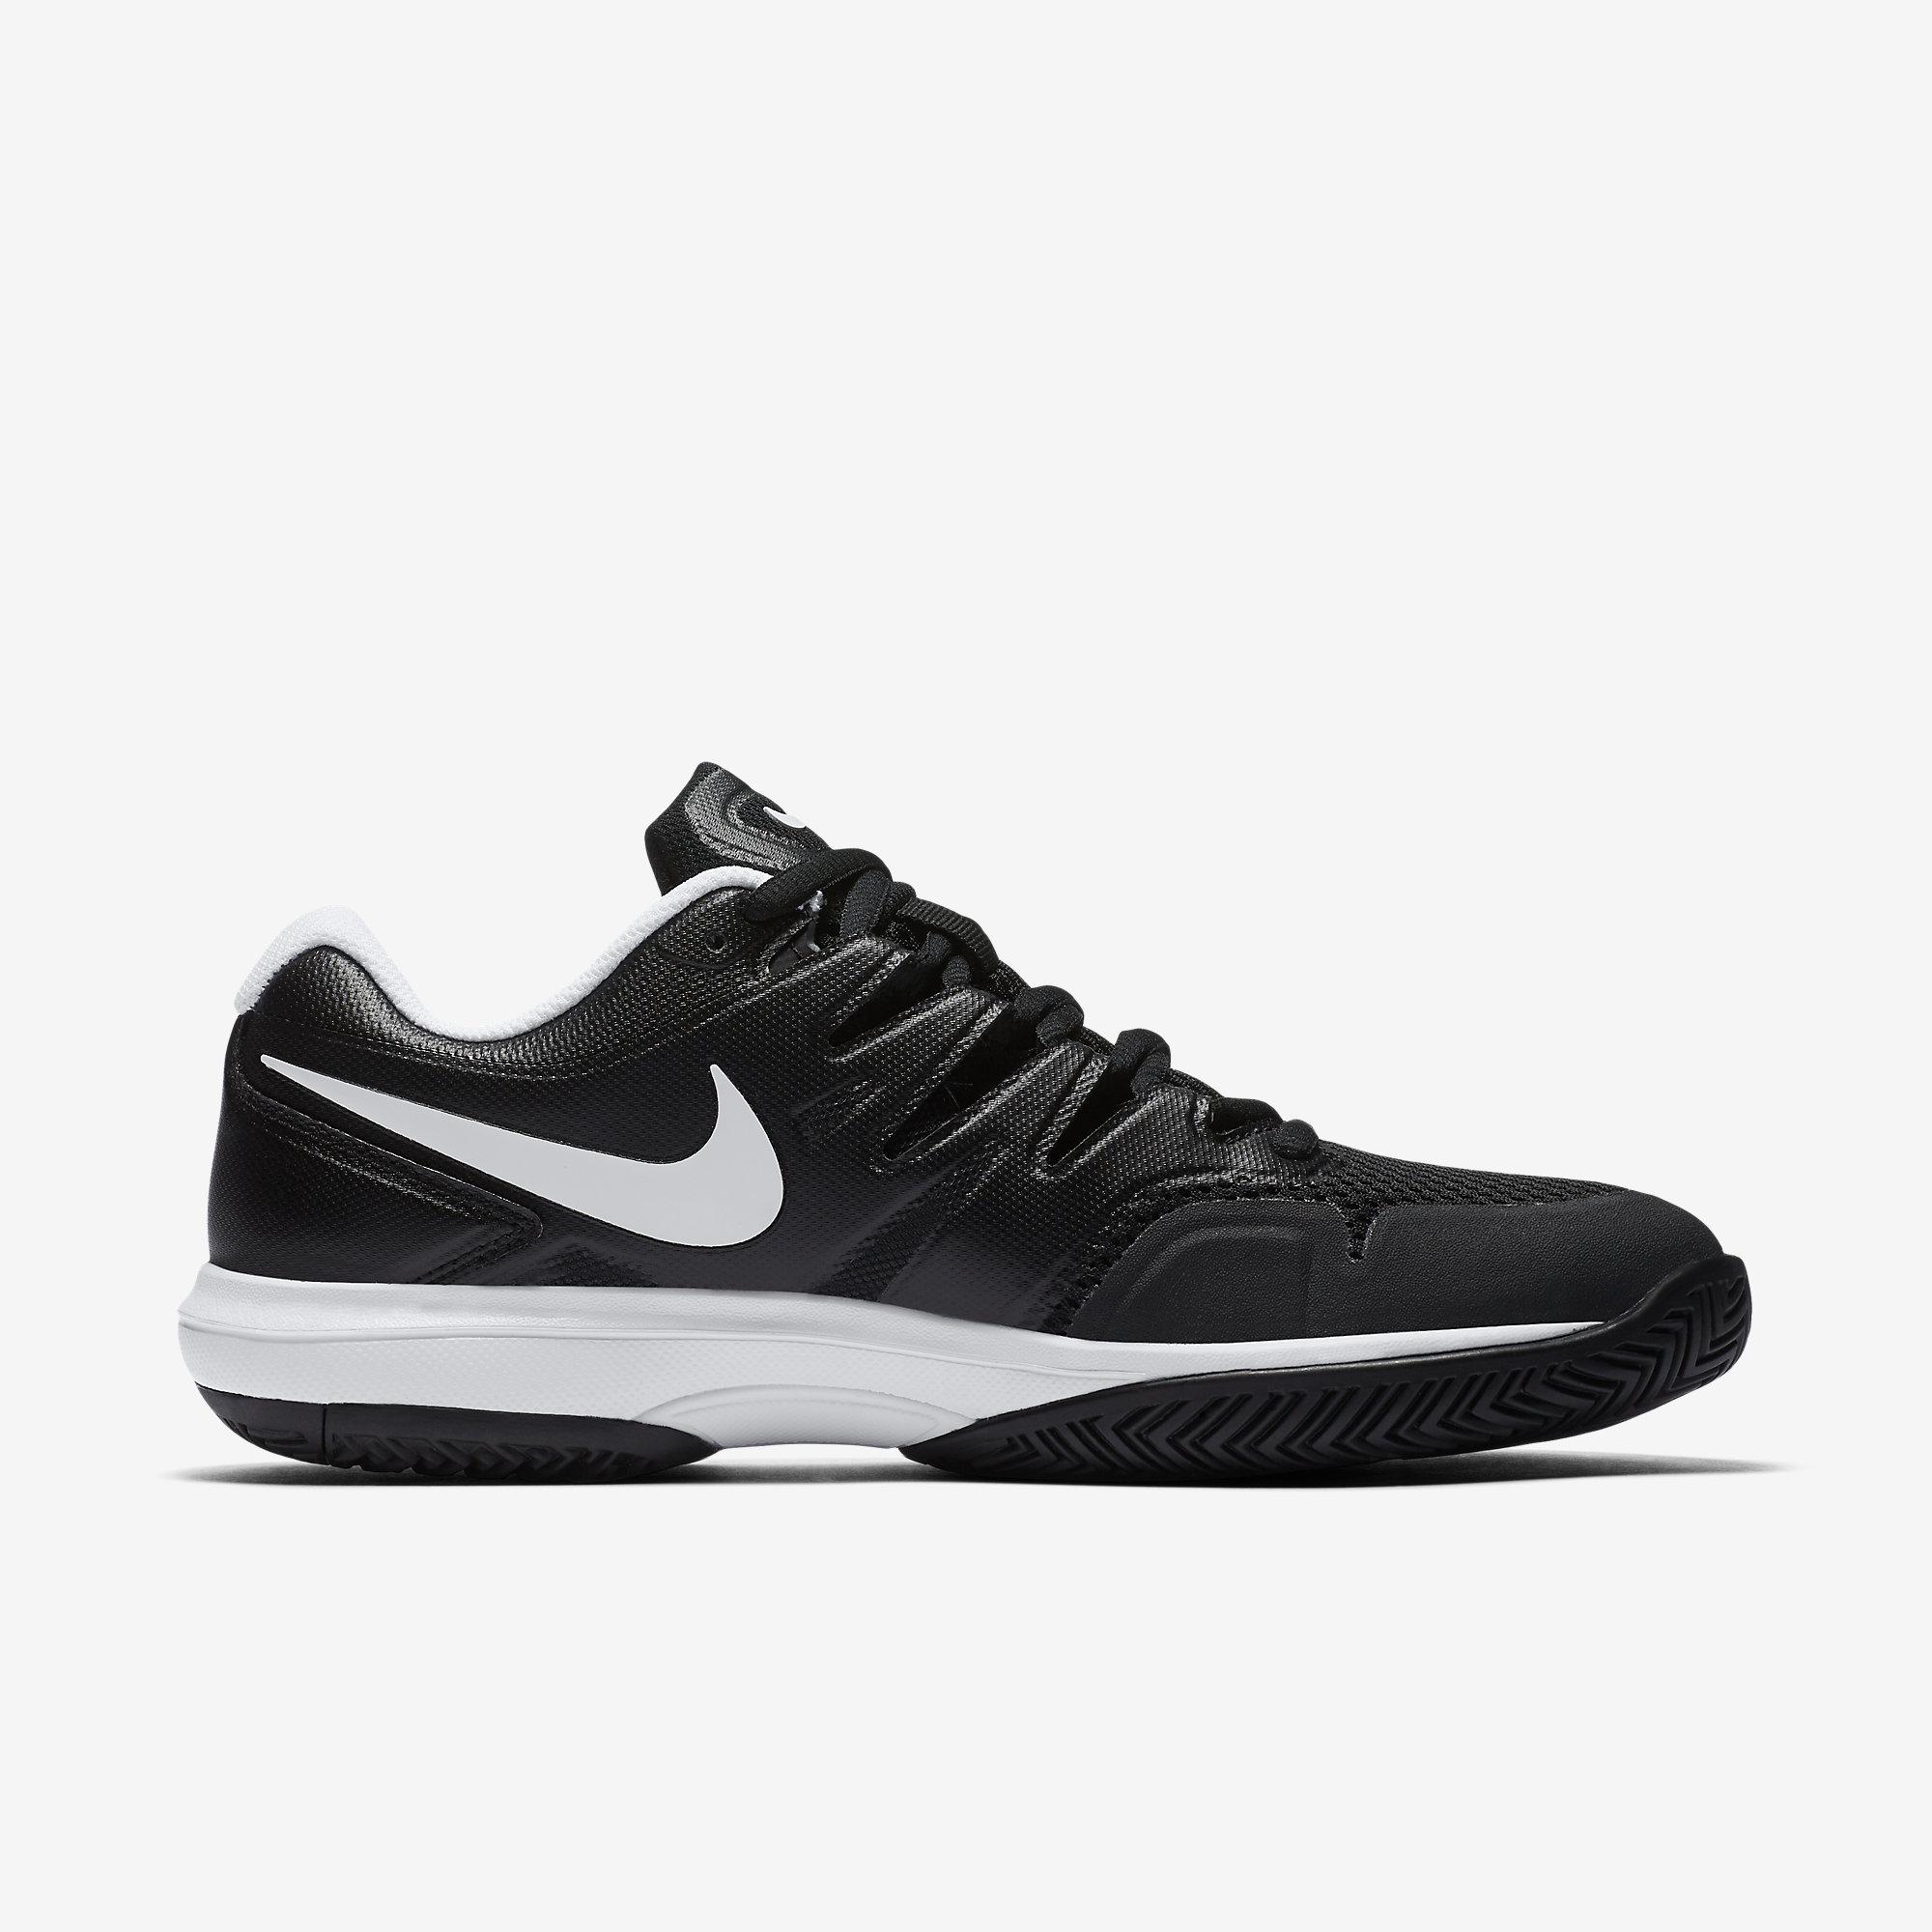 Nike Boys Air Zoom Prestige Tennis Shoes - Black/White - Tennisnuts.com